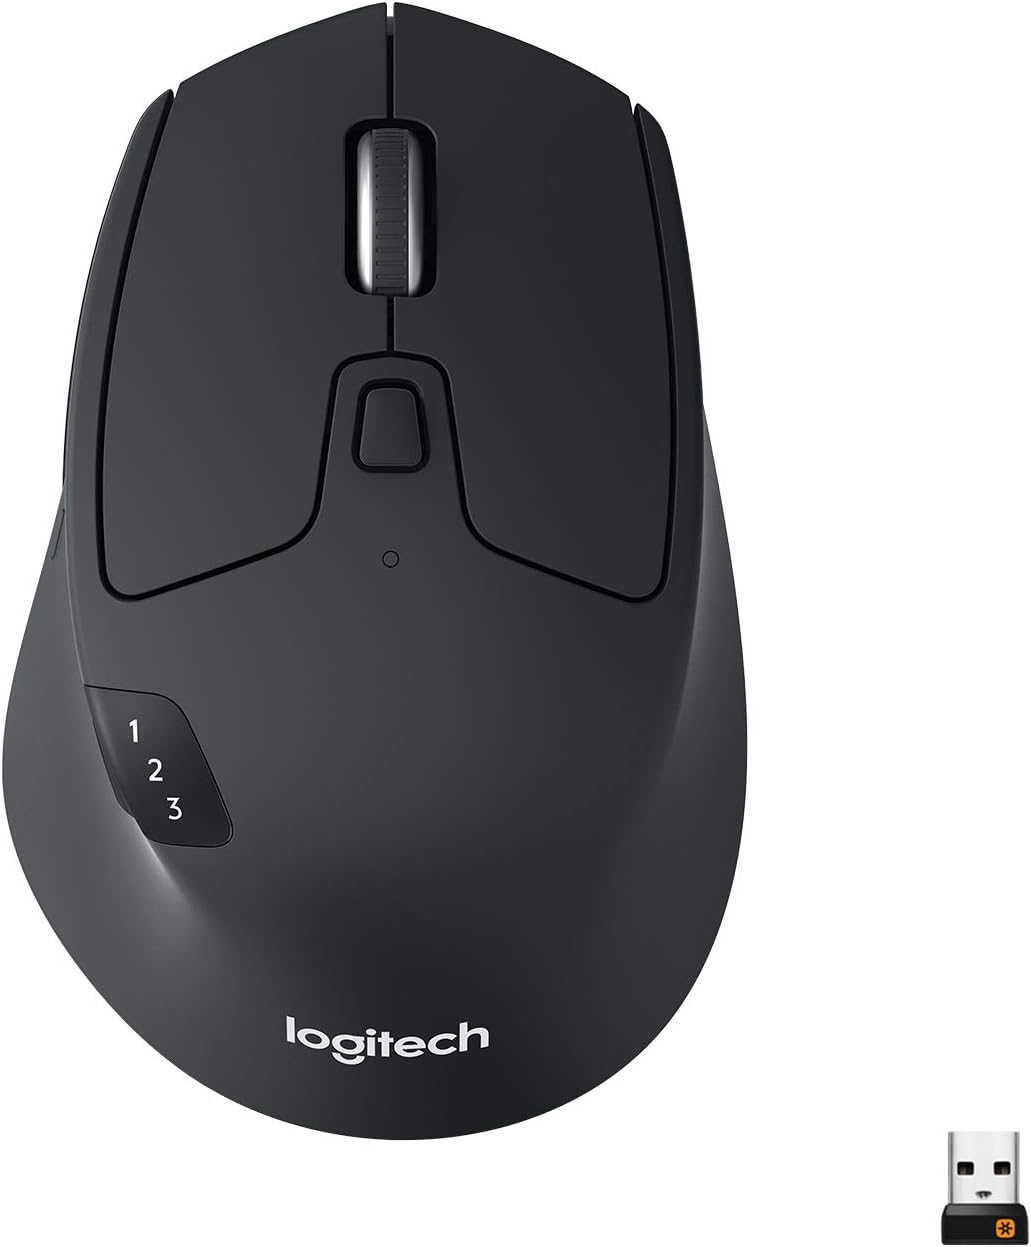 Une image d'une souris Logitech M730 noire